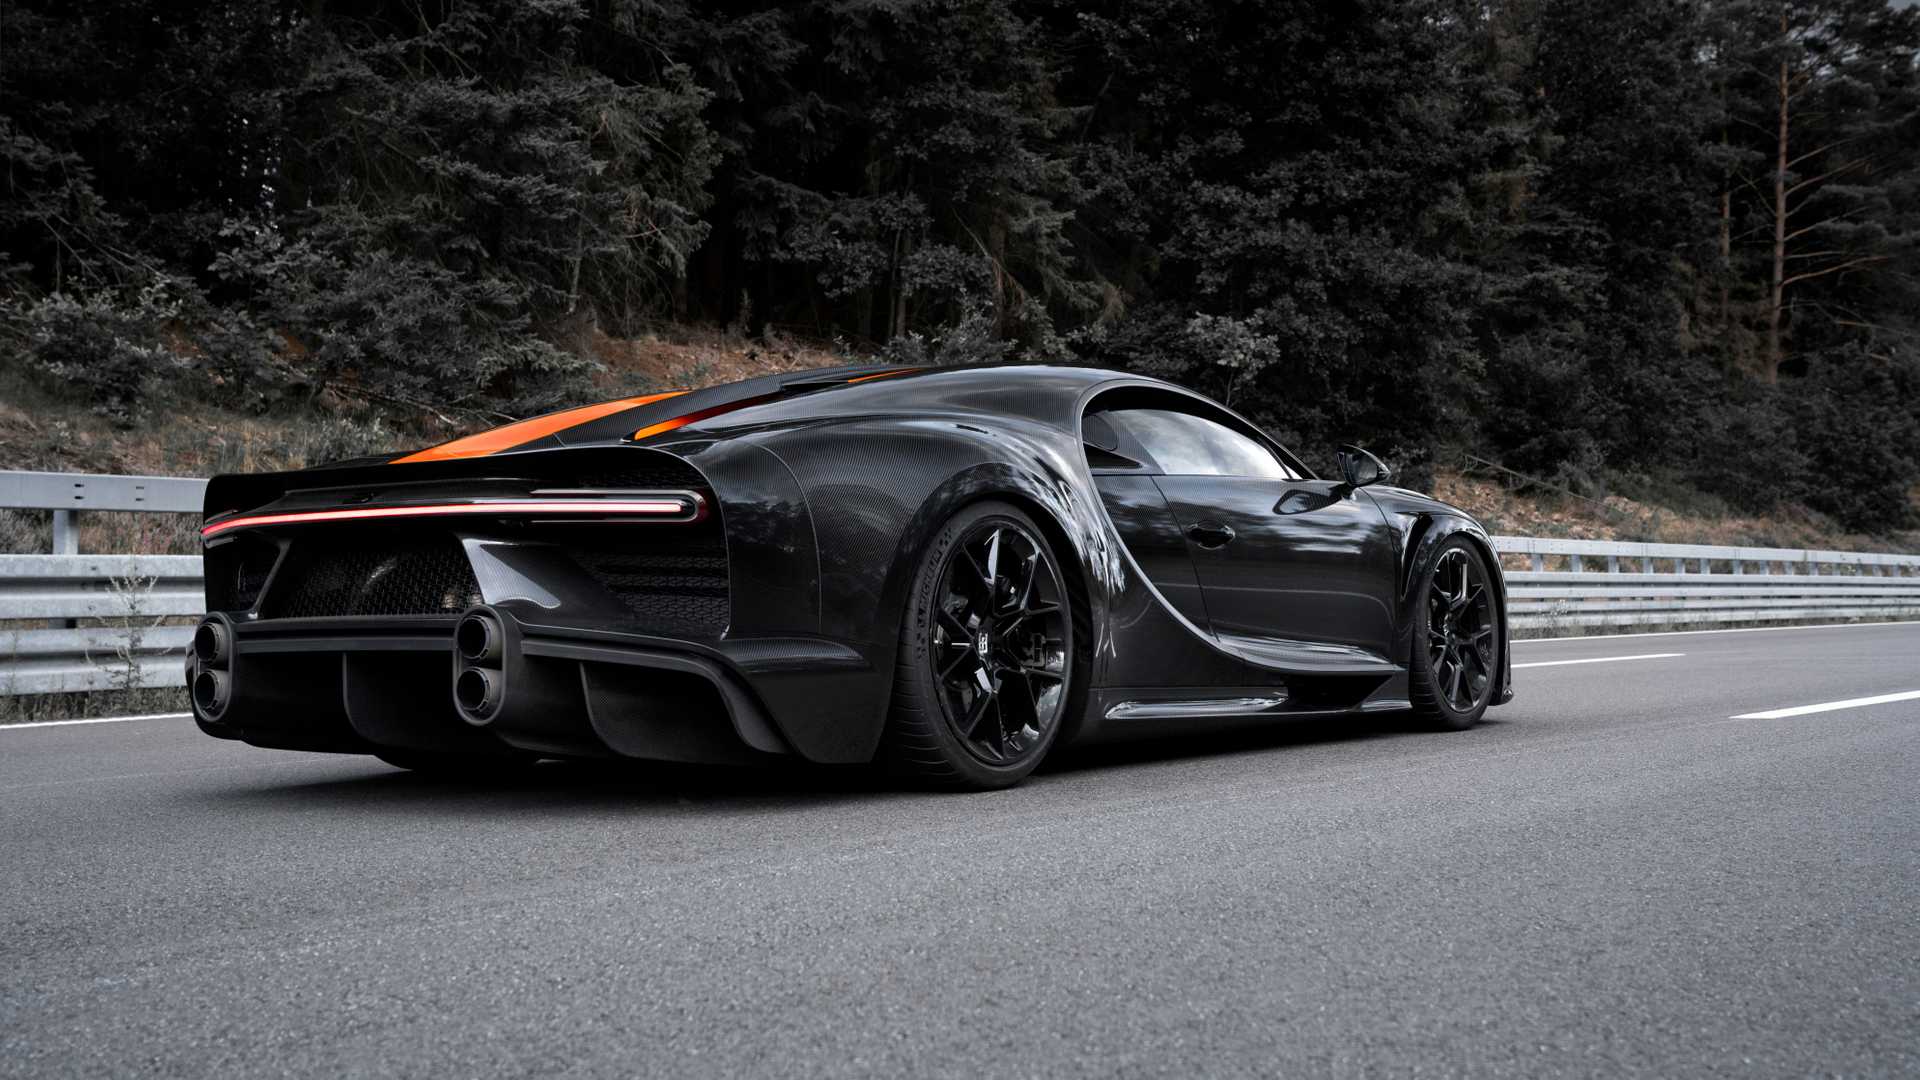 Bugatti ya prepara un Chiron más rápido y potente, y te traemos los primeros detalles